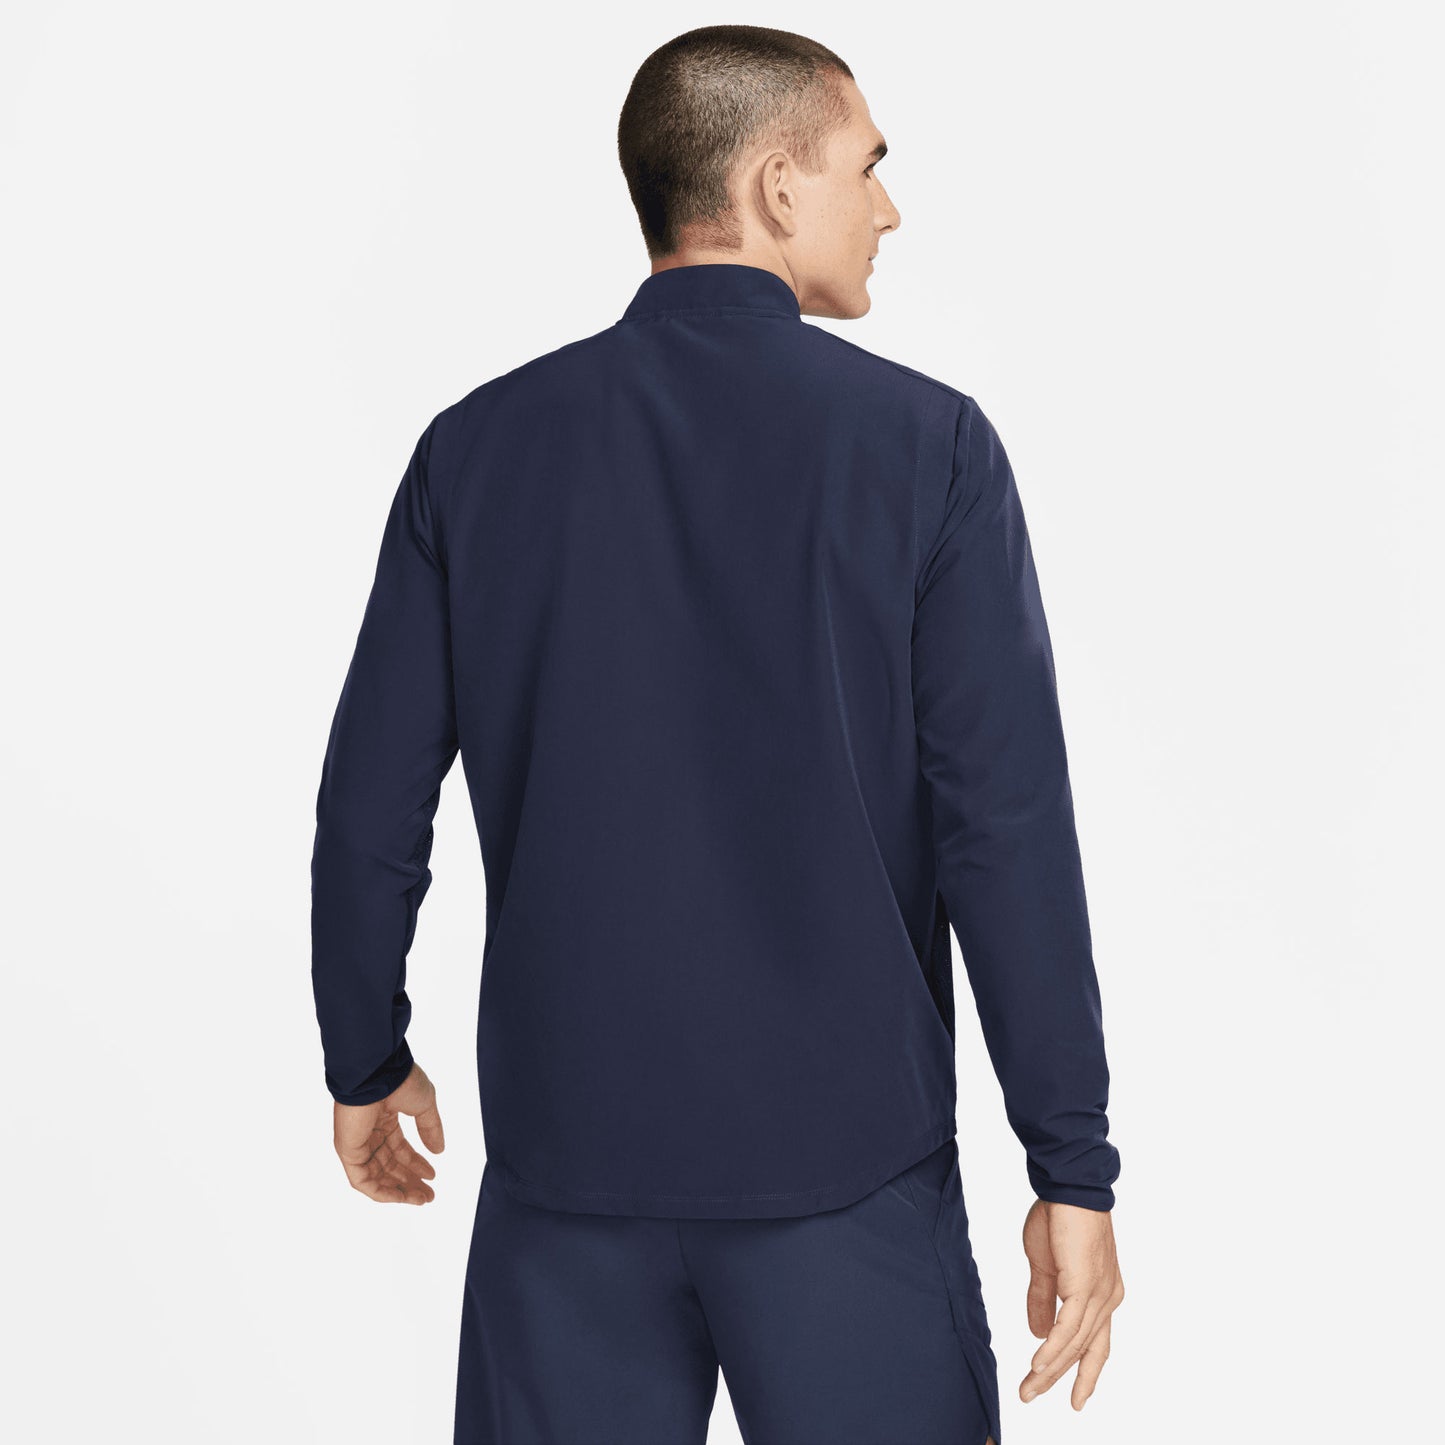 NikeCourt Advantage Men's Packable Tennis Jacket Blue (2)